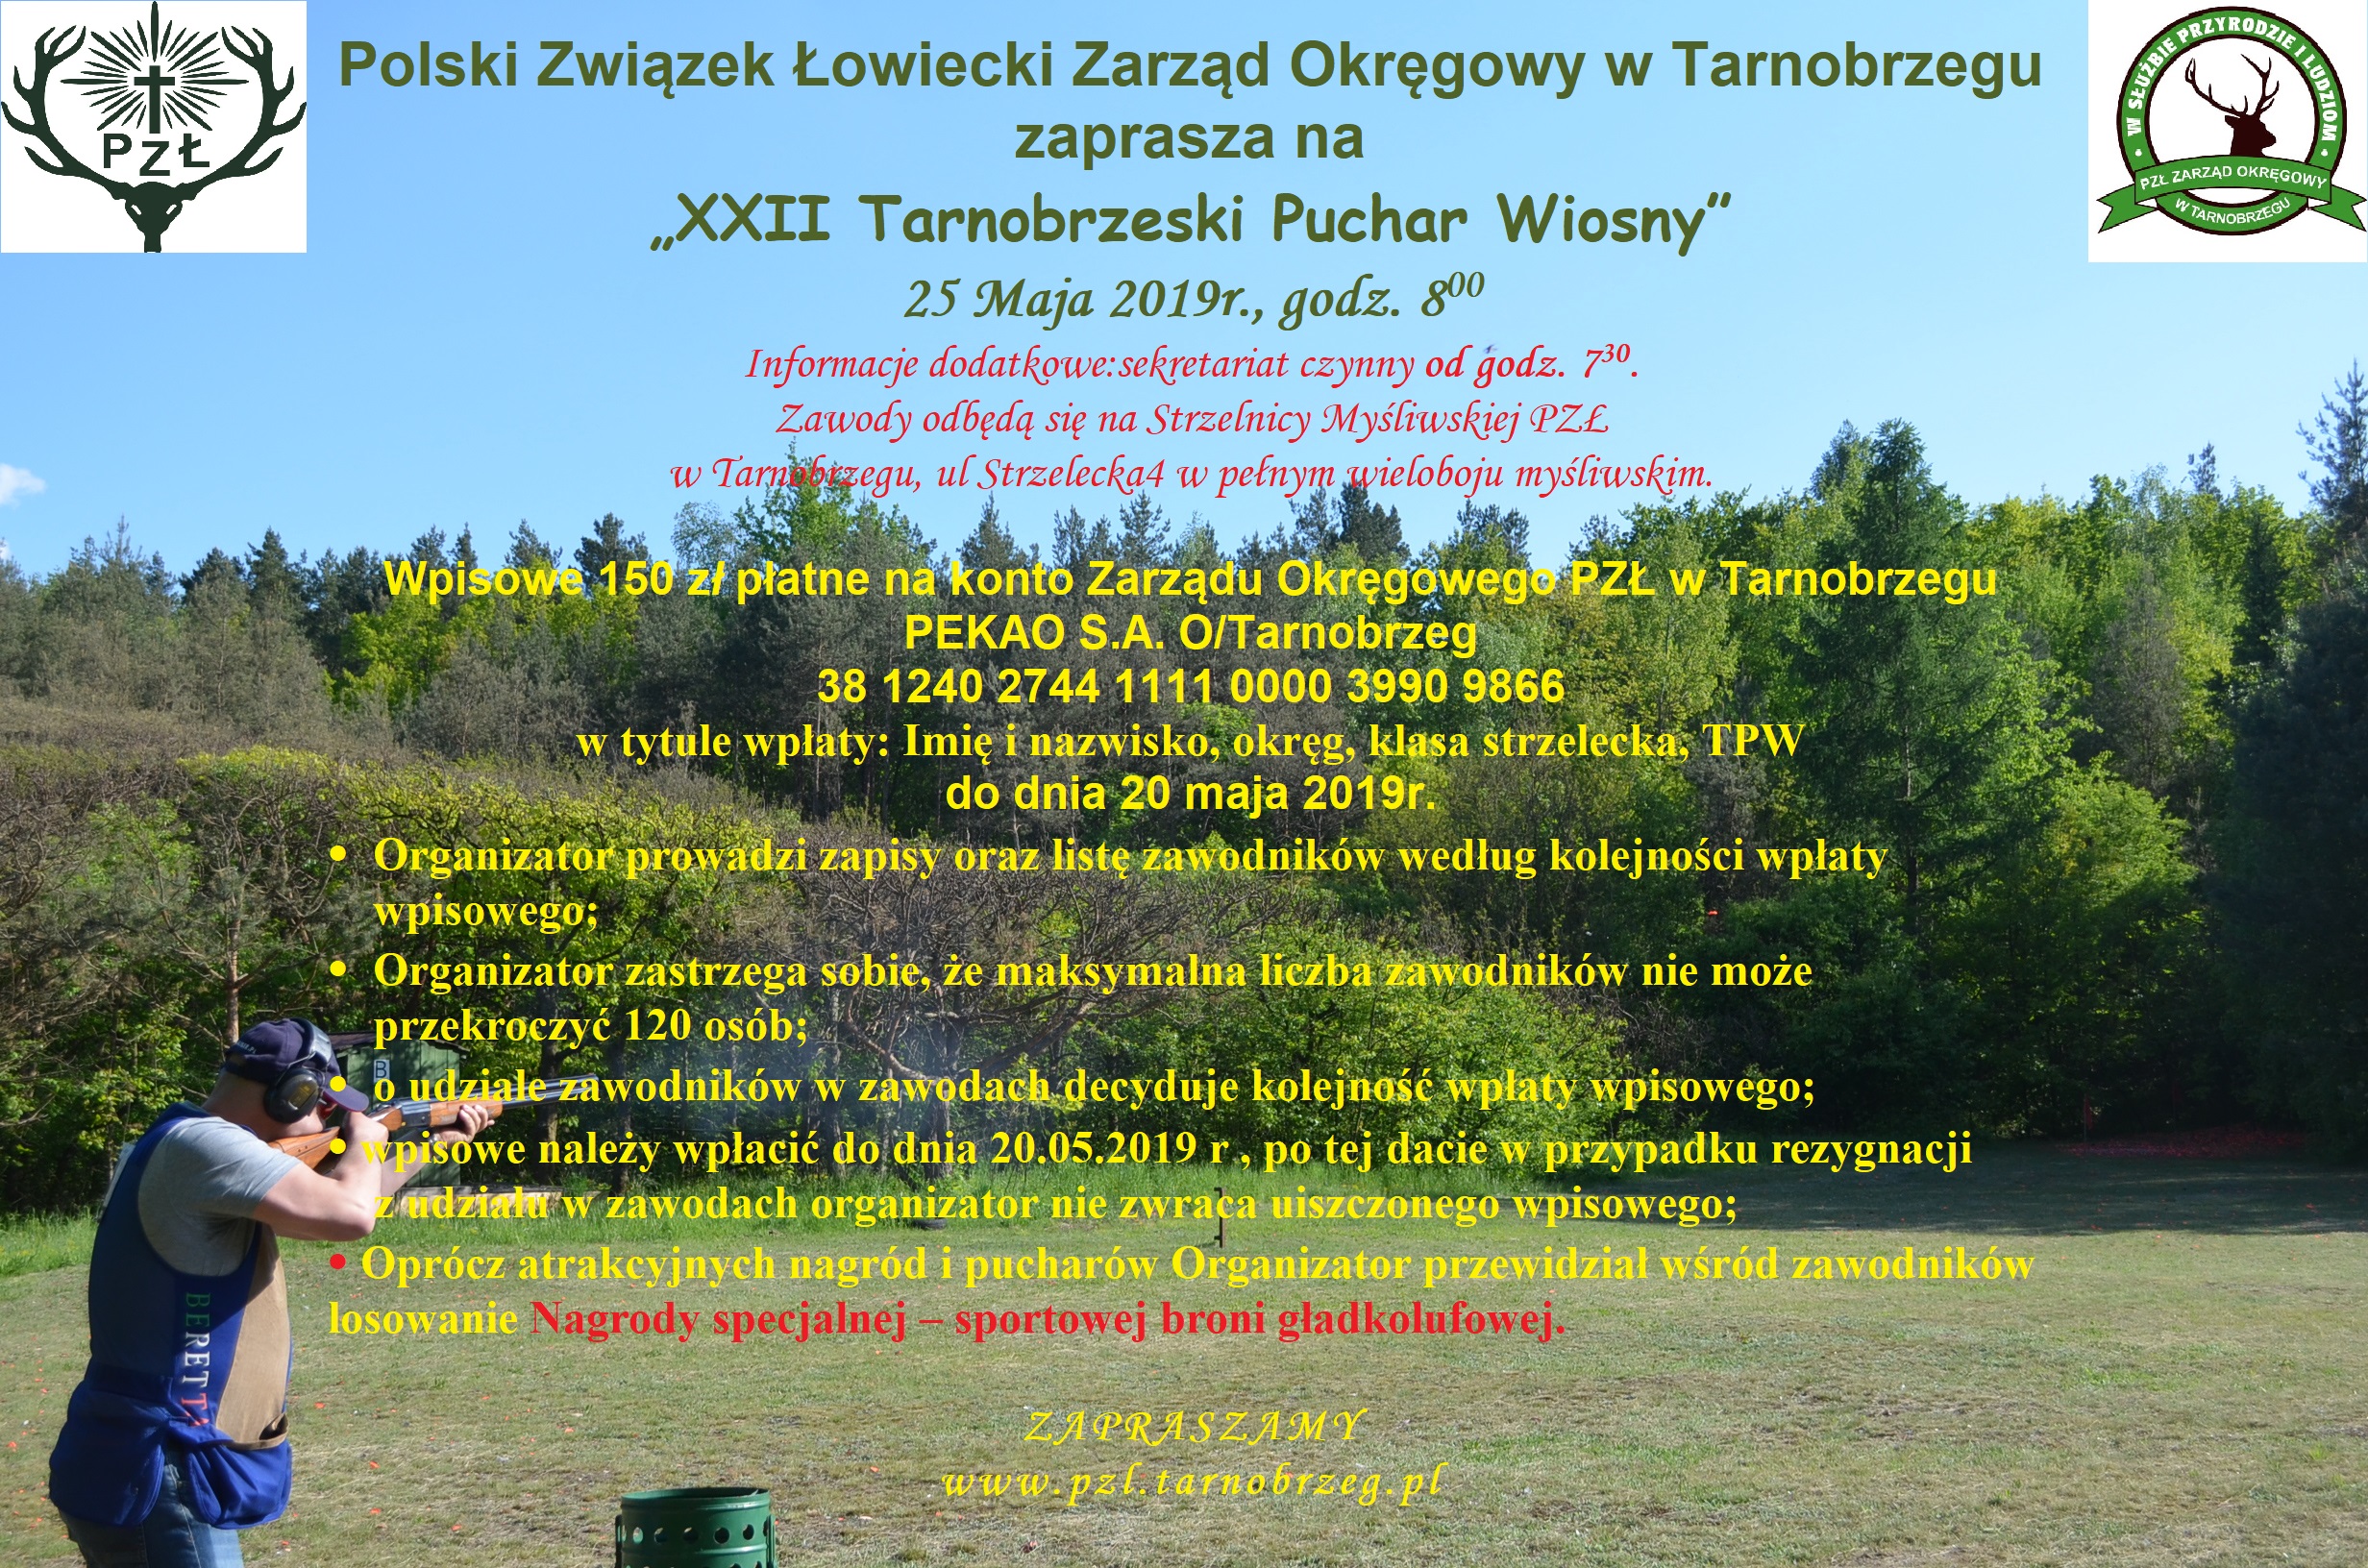 XXII Tarnobrzeski Puchar Wiosny 25.05.2019 r.